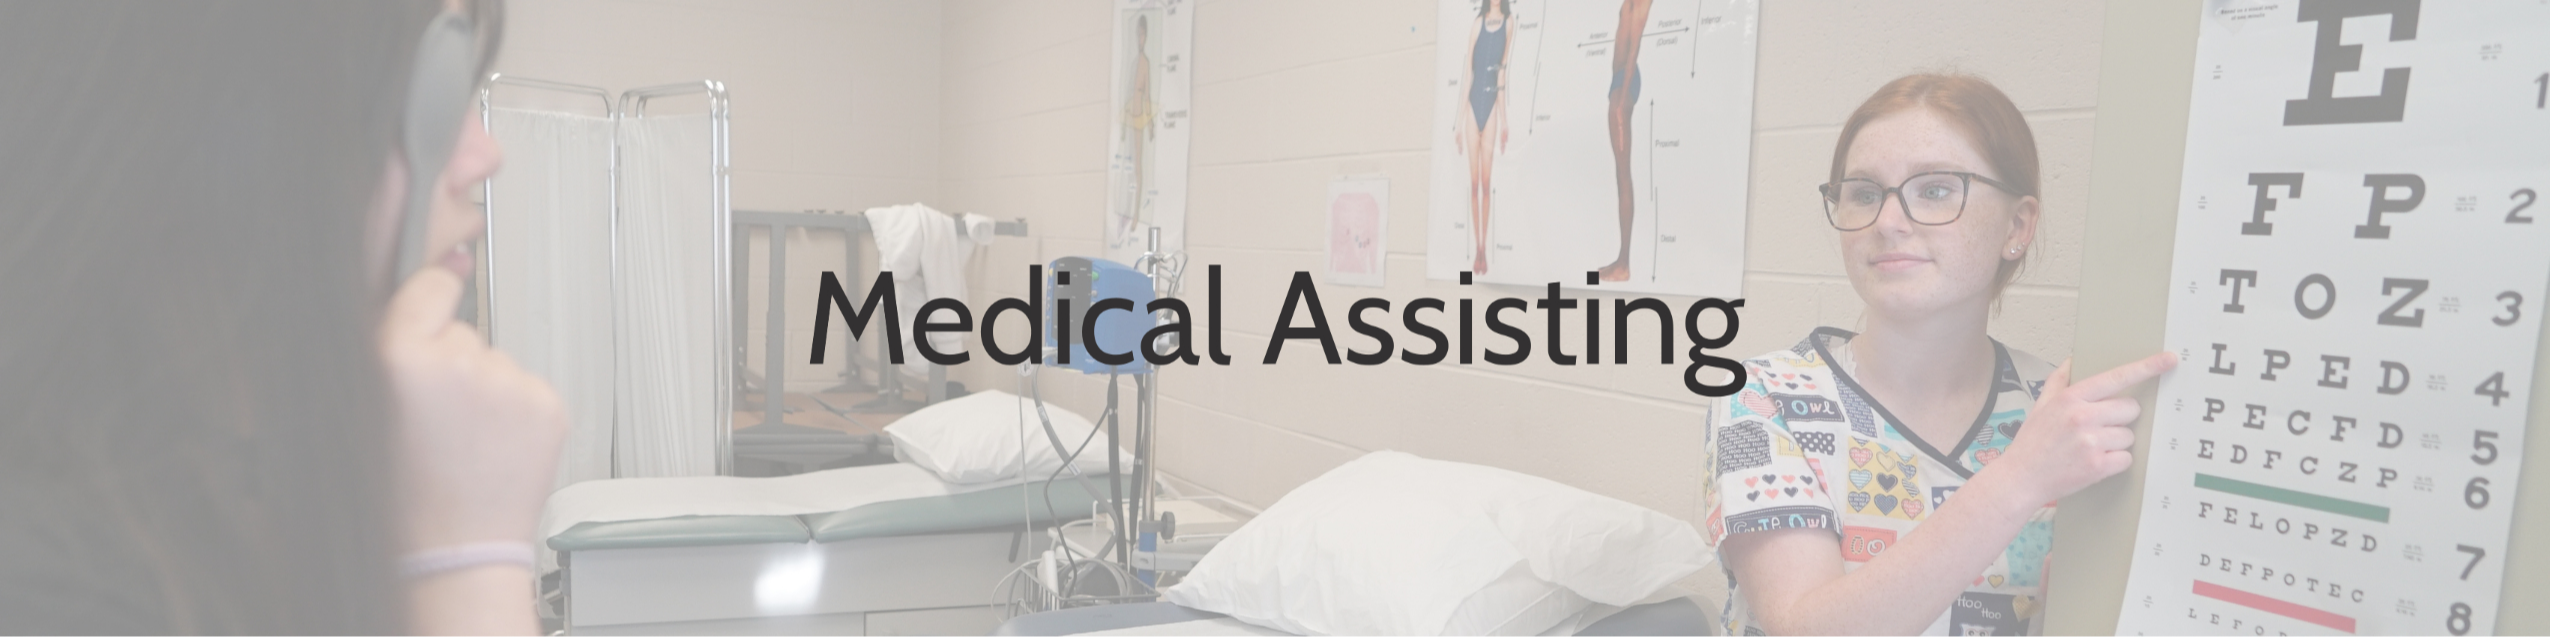 Medical Assistant Header